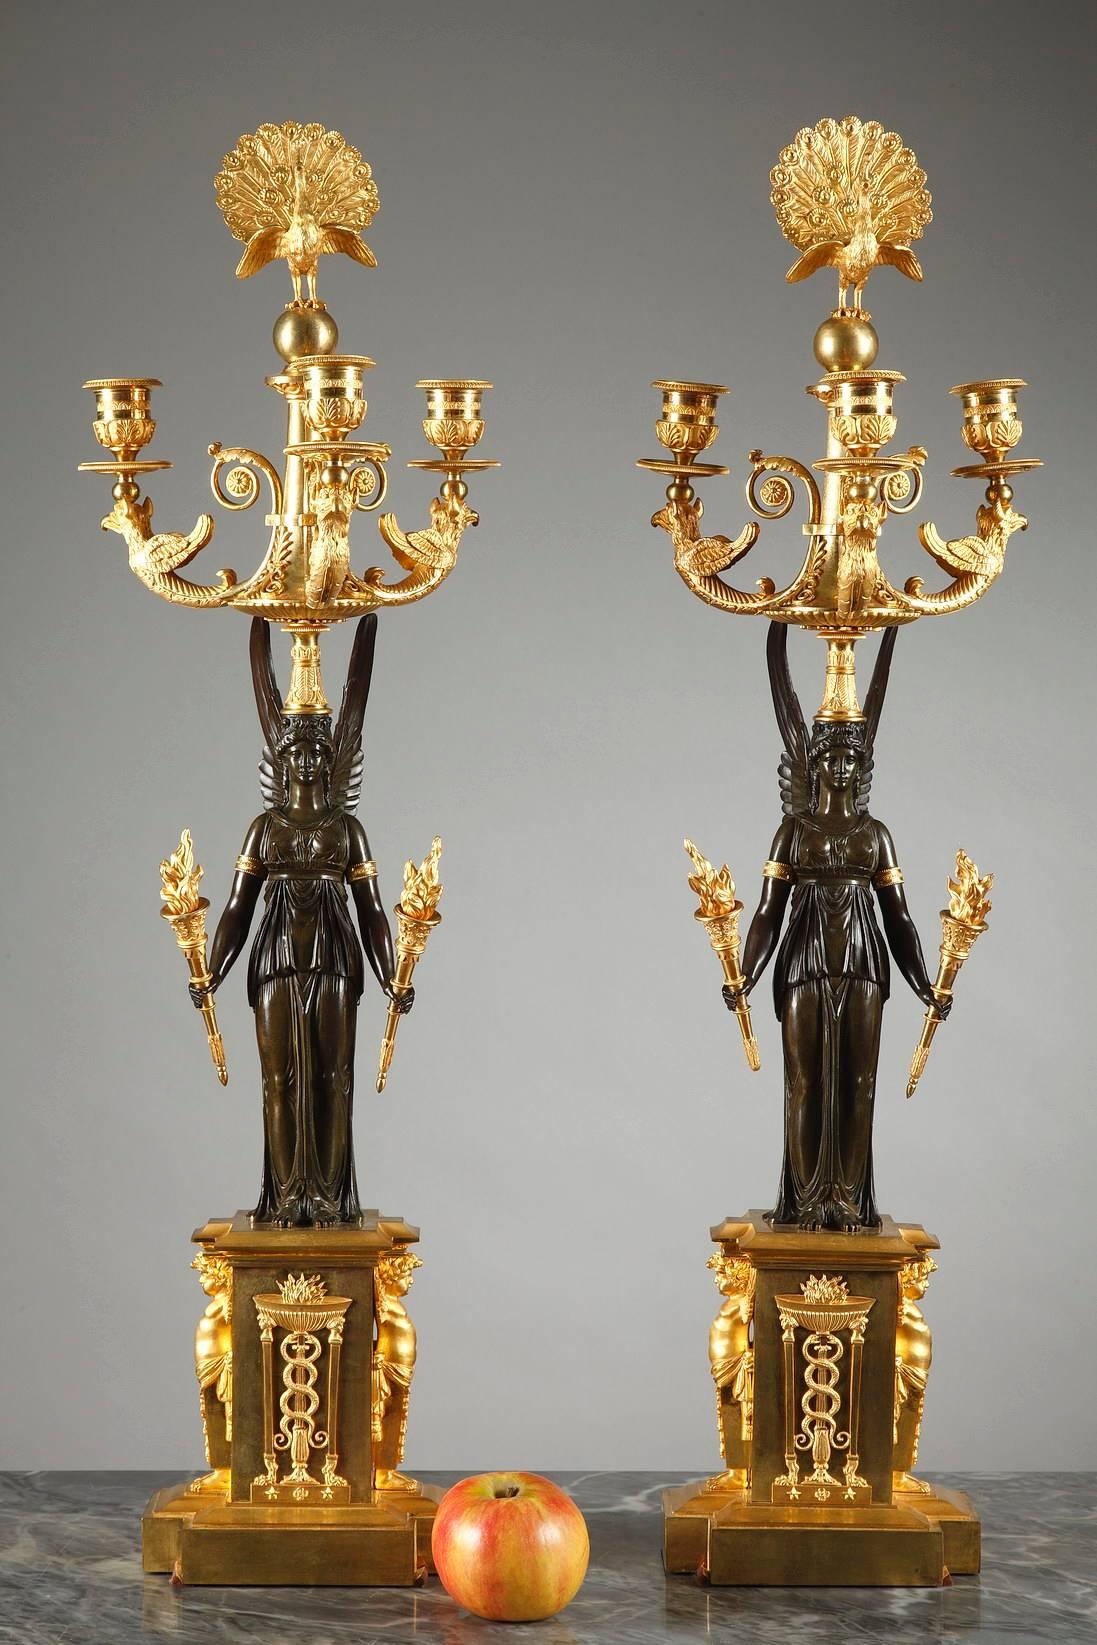 Impressionnante paire de candélabres en bronze doré et sculpté à trois branches. La tige de chaque candélabre est une forme en bronze patiné de la déesse ailée, Victoire, qui tient une torche en bronze doré dans chacune de ses mains. Sa tête est